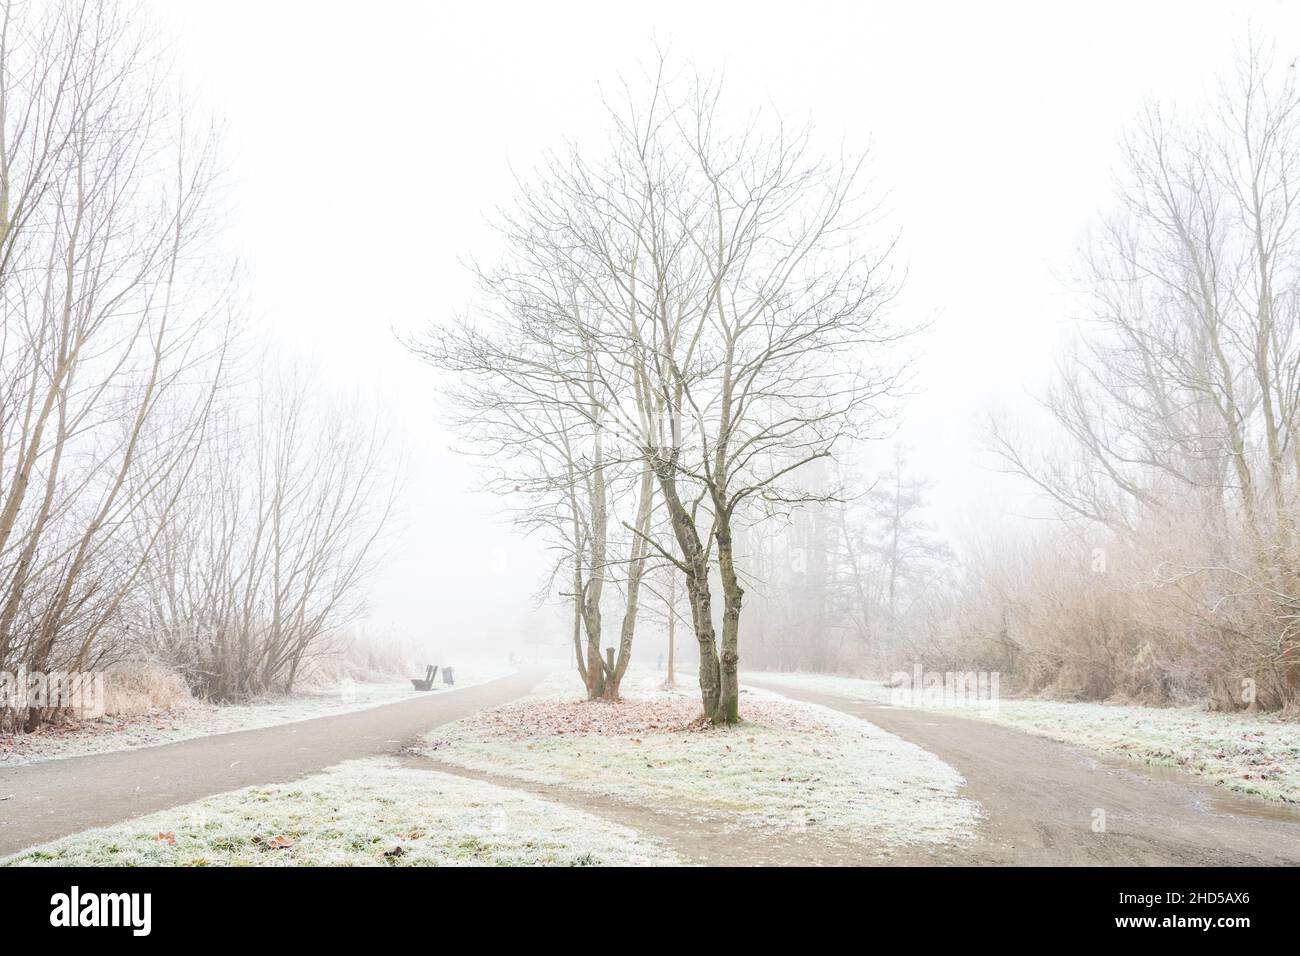 Einsam liegen die Wege im Nebel, Frost liegt auf pflanzen und wegen nur ganz weit im Nebel ist schemenhaft eine Menschliche Gestallt zu erahnen Foto Stock